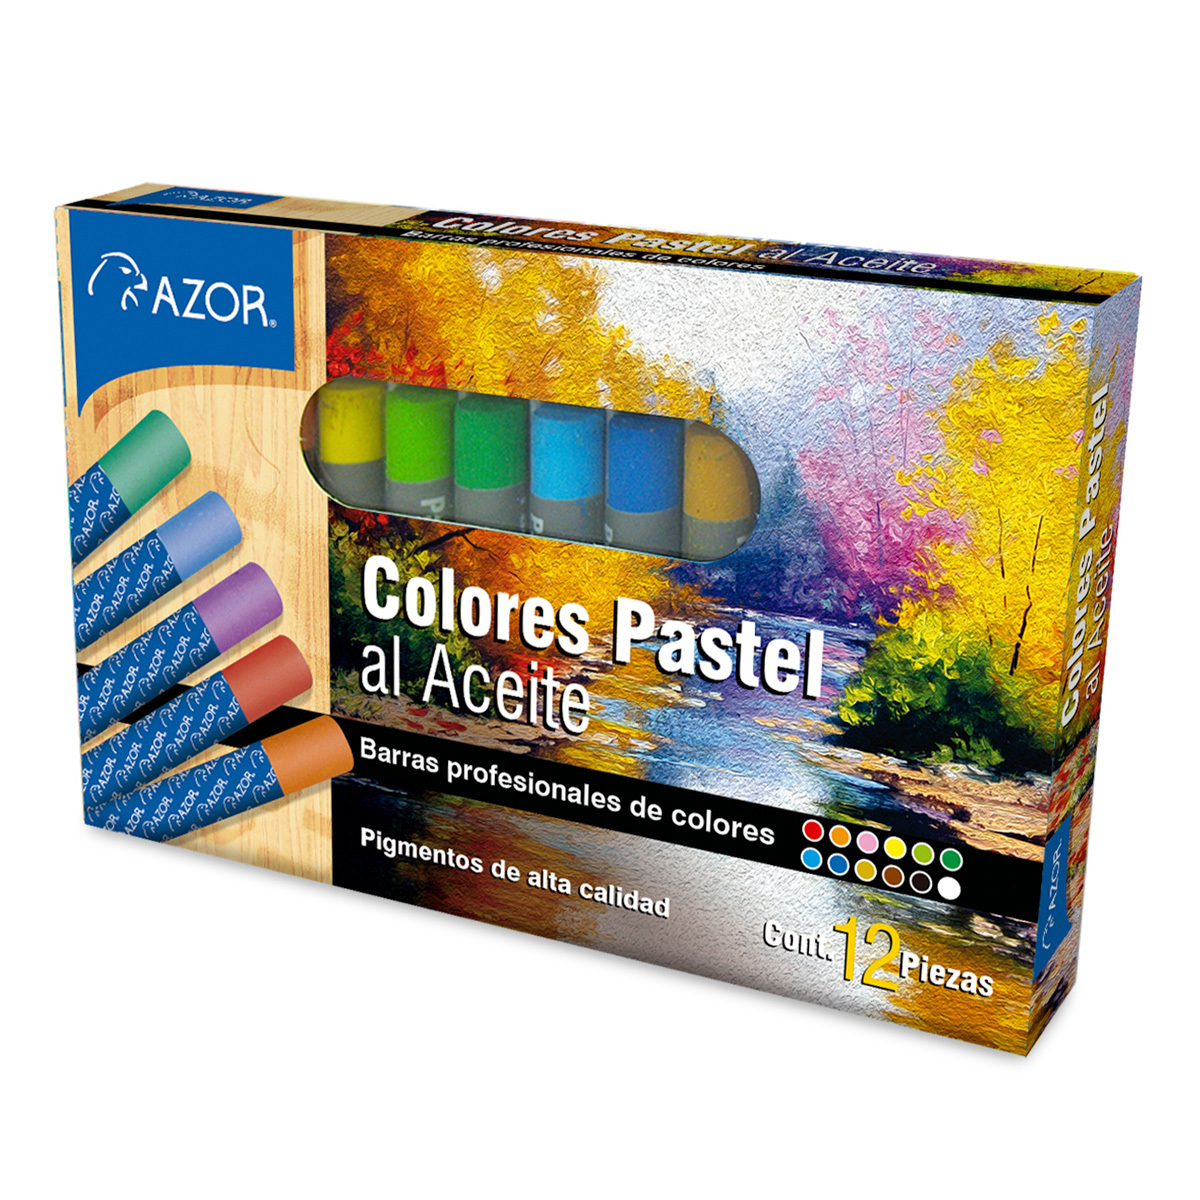 Juego de Pinturas Pastel al Aceite en Barra Profesional Azor Stafford 0012 / Colores surtidos / 12 piezas